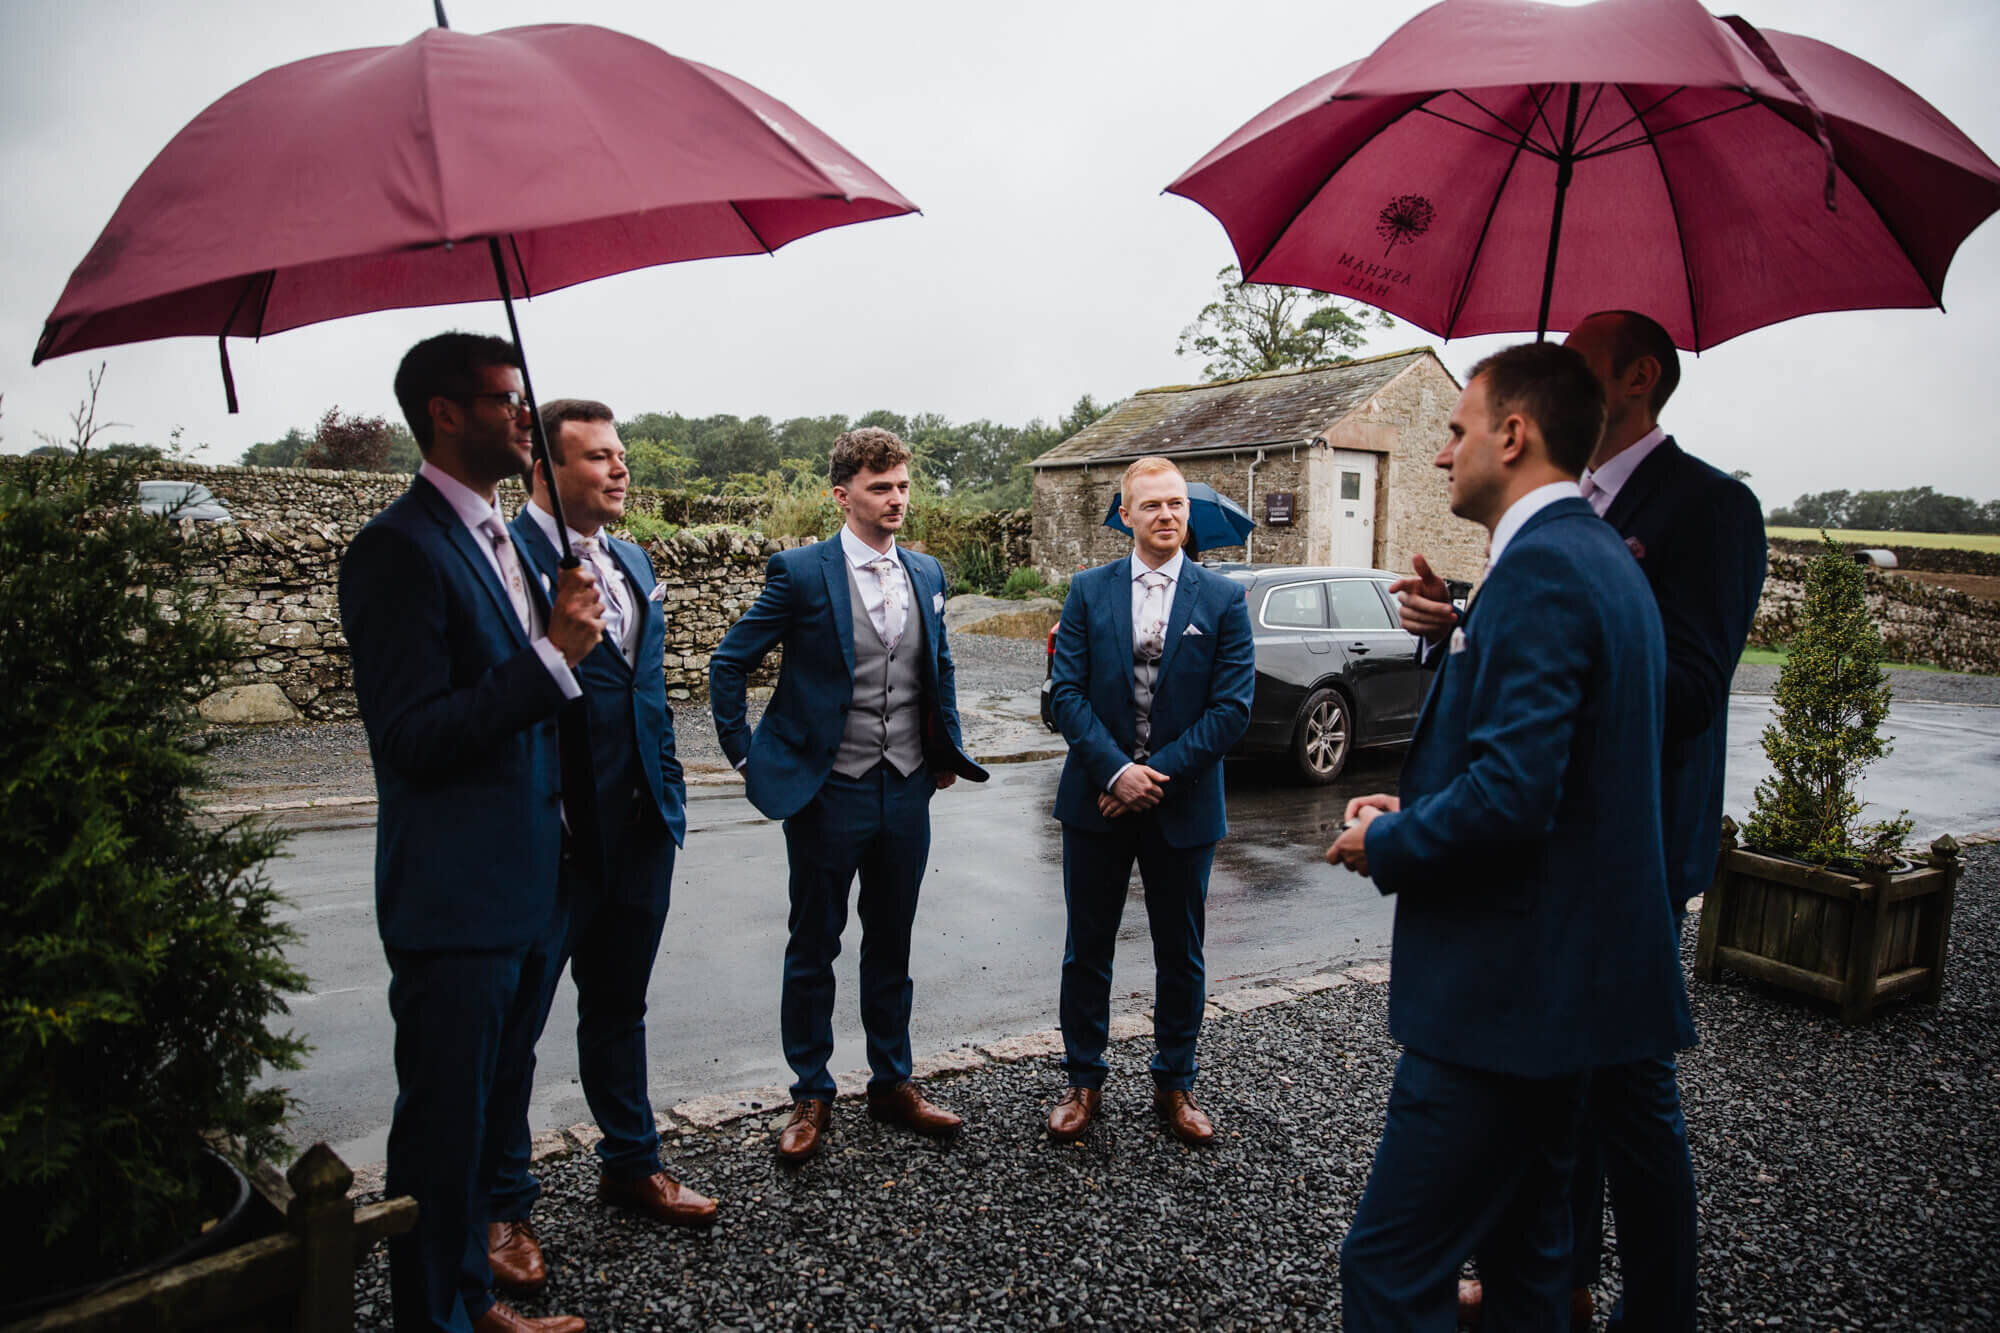 groomsmen group holding umbrellas outside the barn